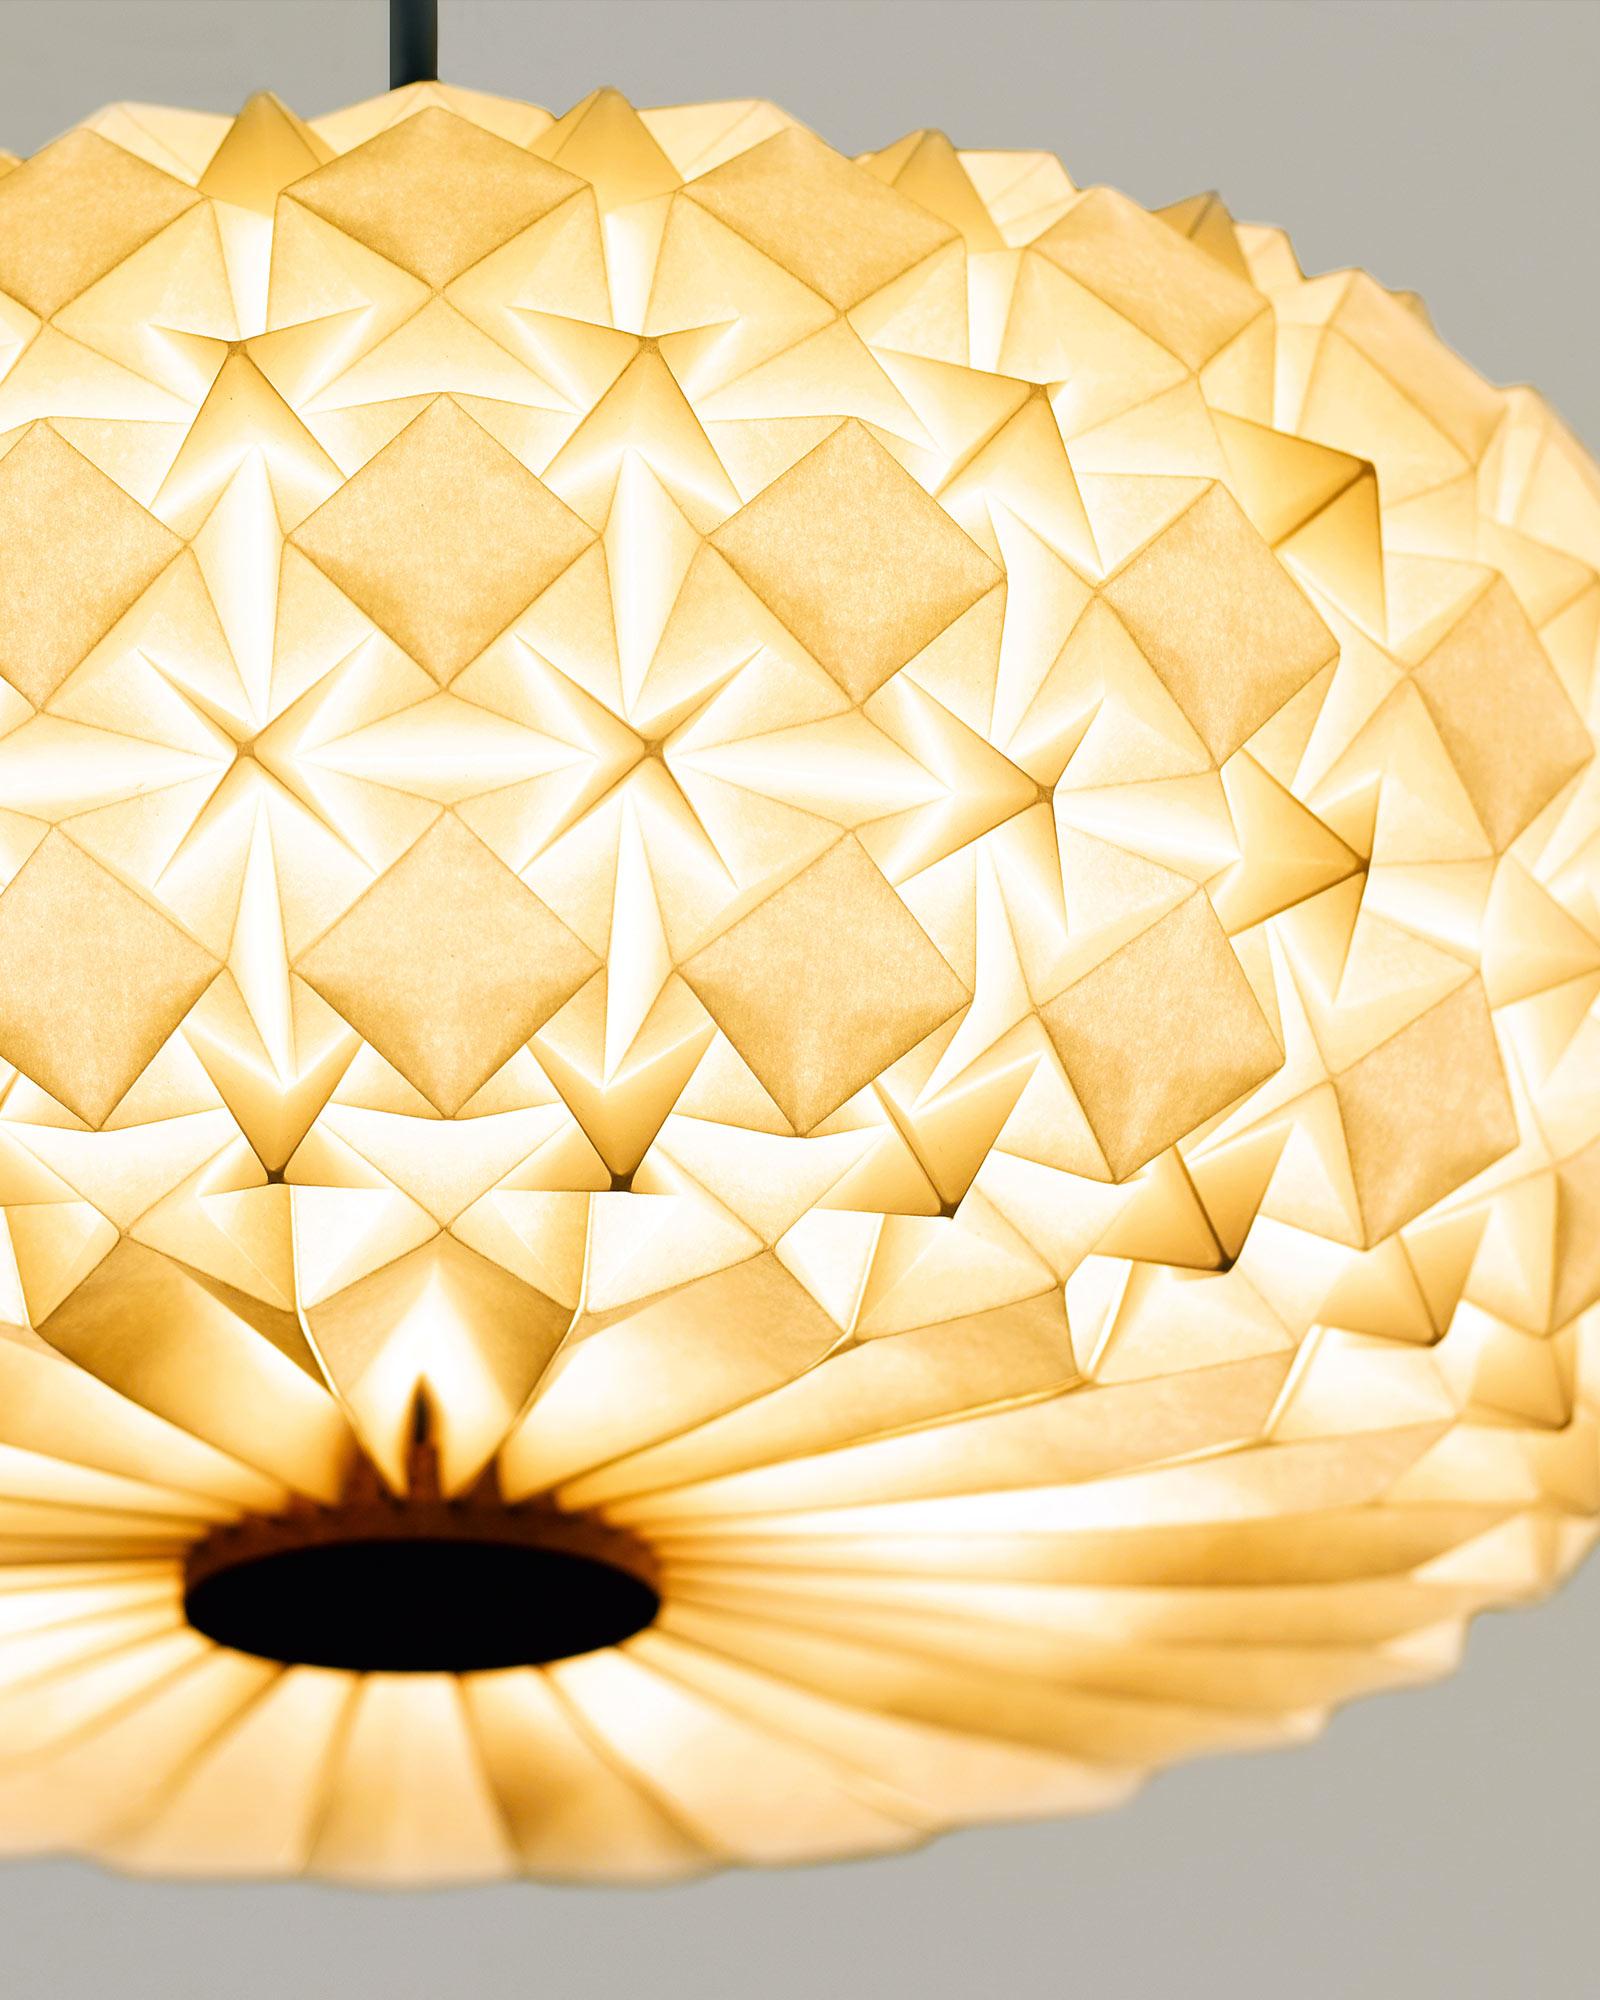 Ein CNC-gefräster Holzbaldachin mit 5 zart handgefalteten Origami-Papierlampenschirmen. Entworfen in Zusammenarbeit mit dem Origami-Künstler Ilan Garibi. Die Struktur aus Mahagoniholz ergänzt und kontrastiert ihn und macht ihn zu einem perfekten